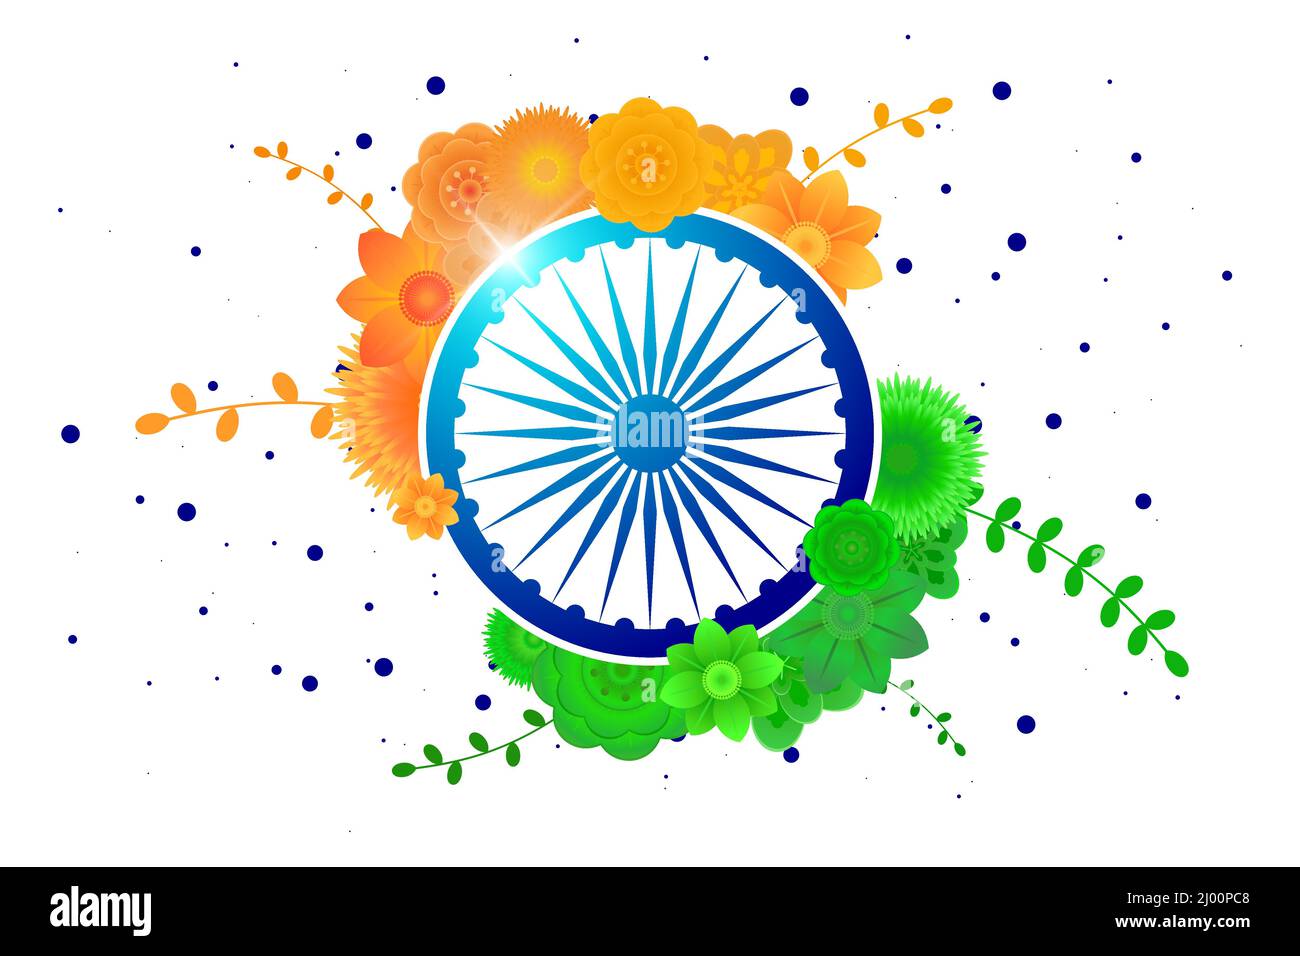 Indianer Unabhängigkeit 15 august oder republic Day 26 januar Banner. Nationaler Urlaubsflyer für Indien. Zelebration Poster von Blumen in Fahnenfarben mit Rad-Symbol. Vektorgrafik Stock Vektor